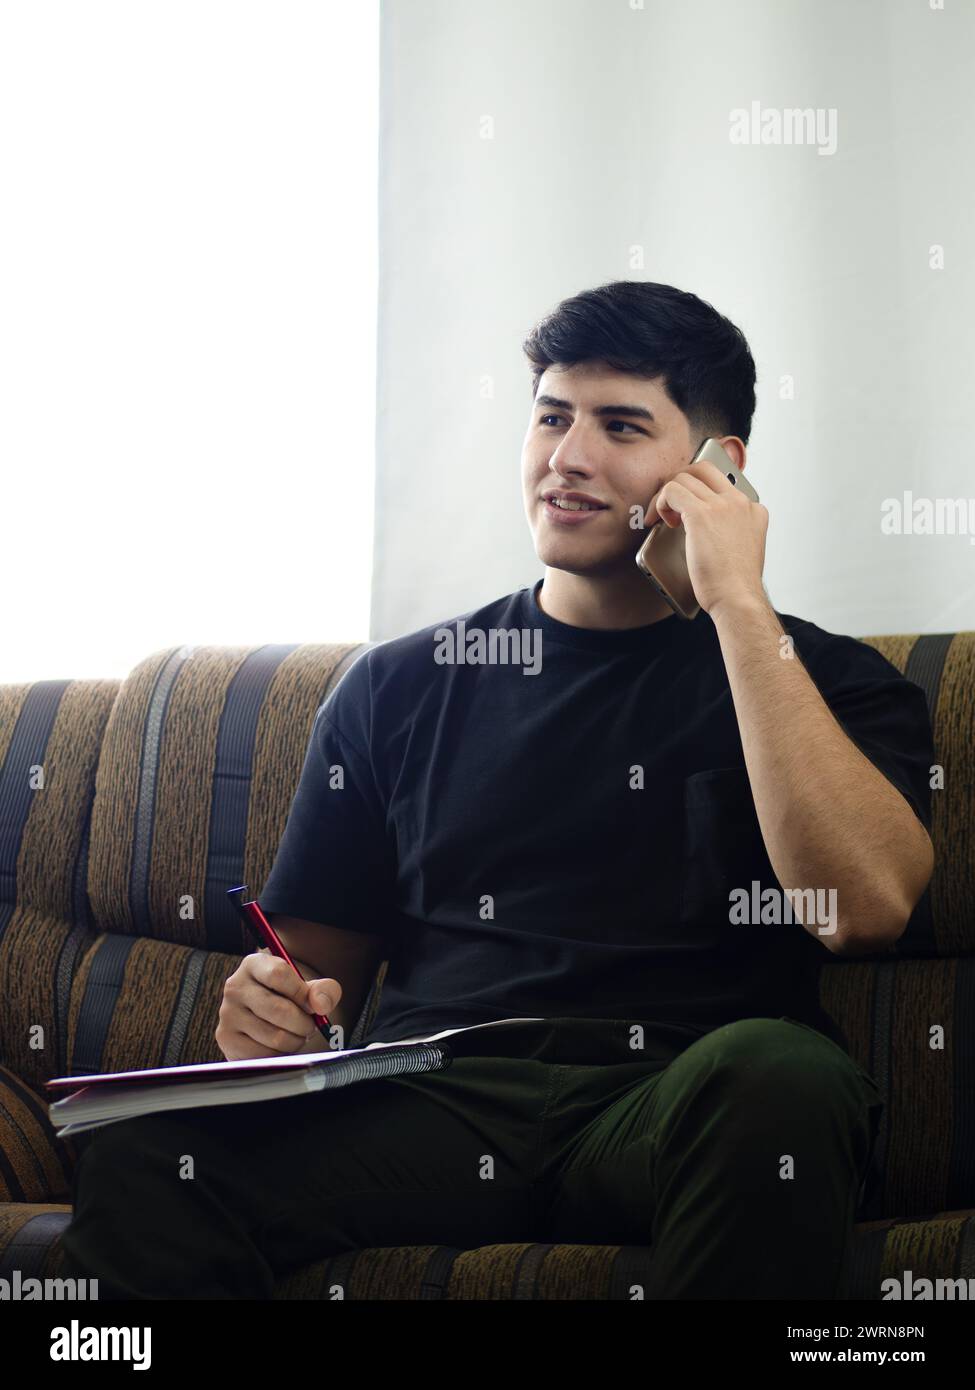 Immagine verticale di un giovane uomo che conduce affari telefonicamente, prende ordini o come contabile organizza e pianifica strategie Foto Stock